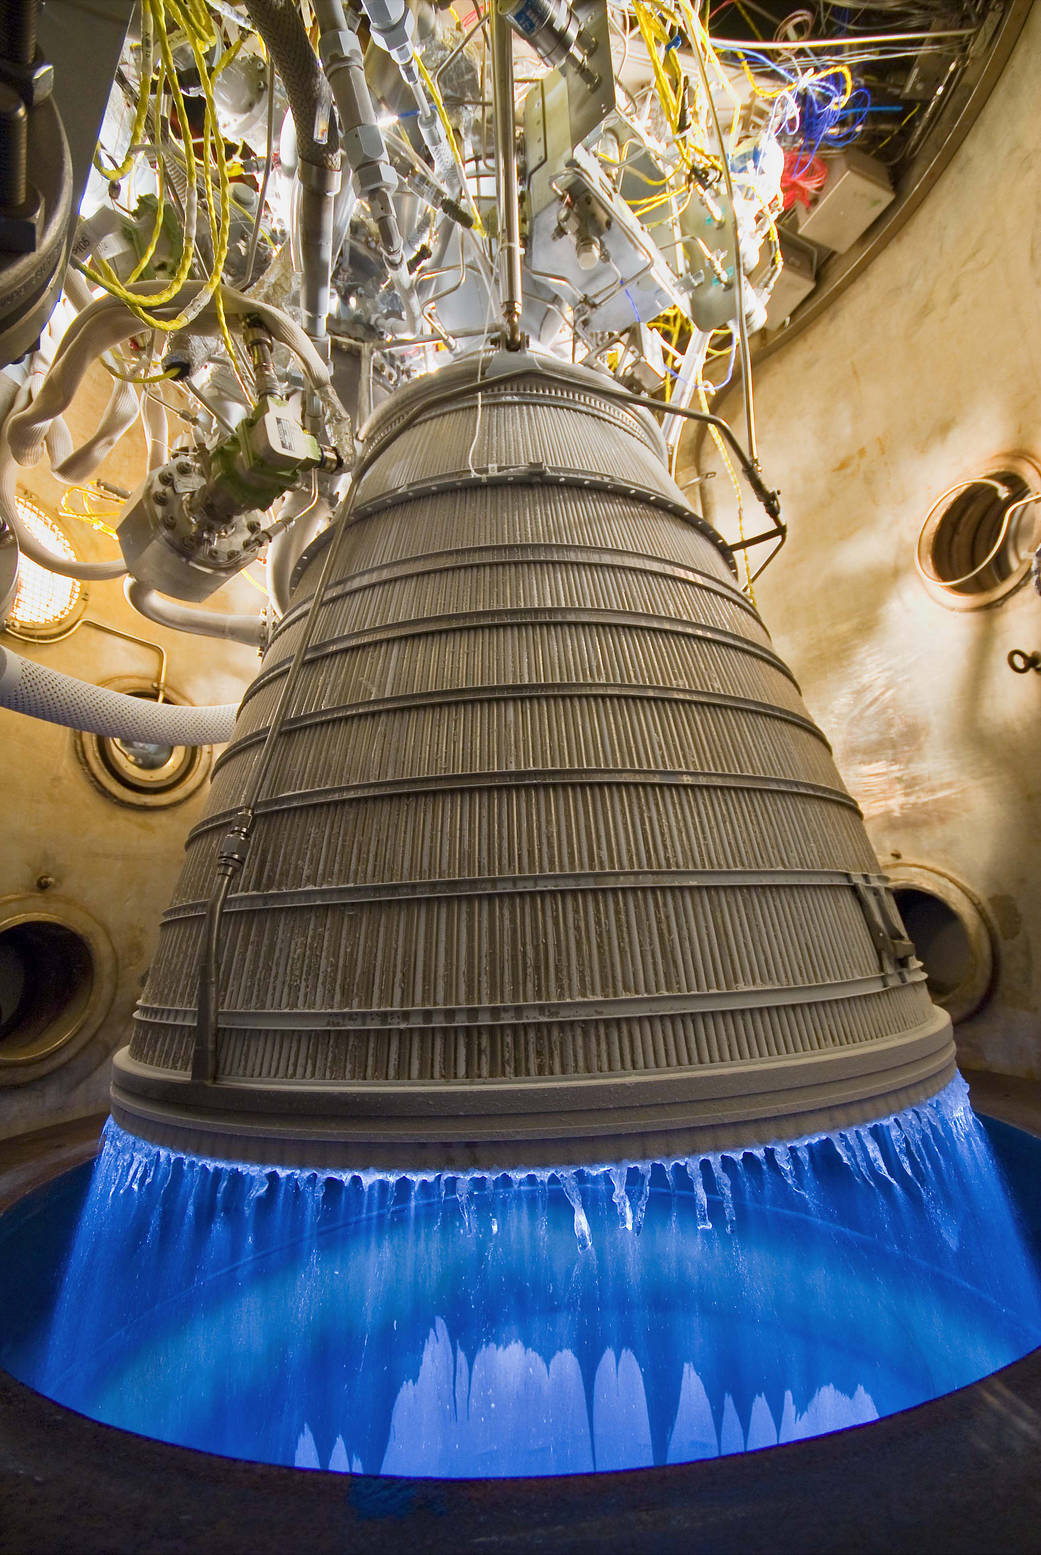 Awesome NASA Megarocket Engine Test Burns Blue (Photo)